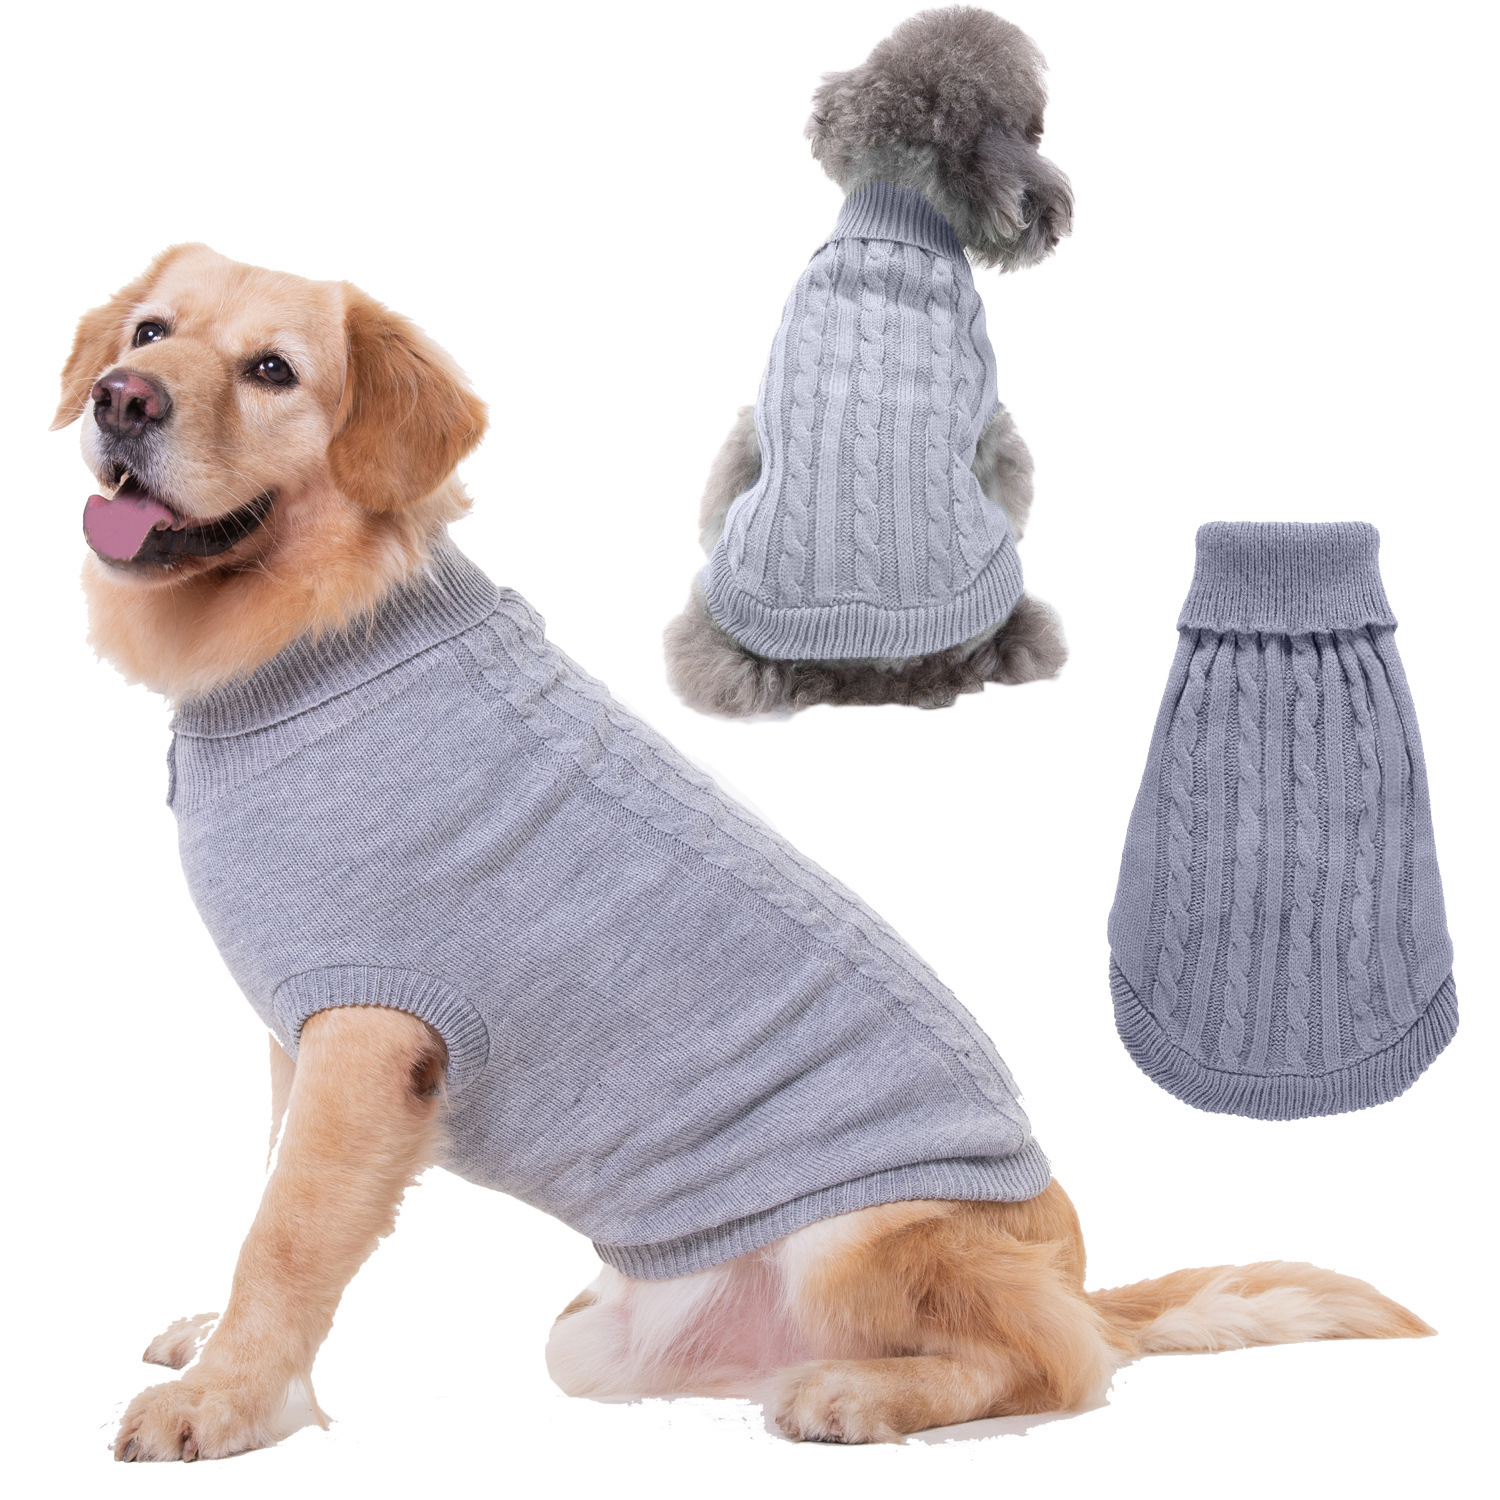 Одежда для собаки из рукава кофты